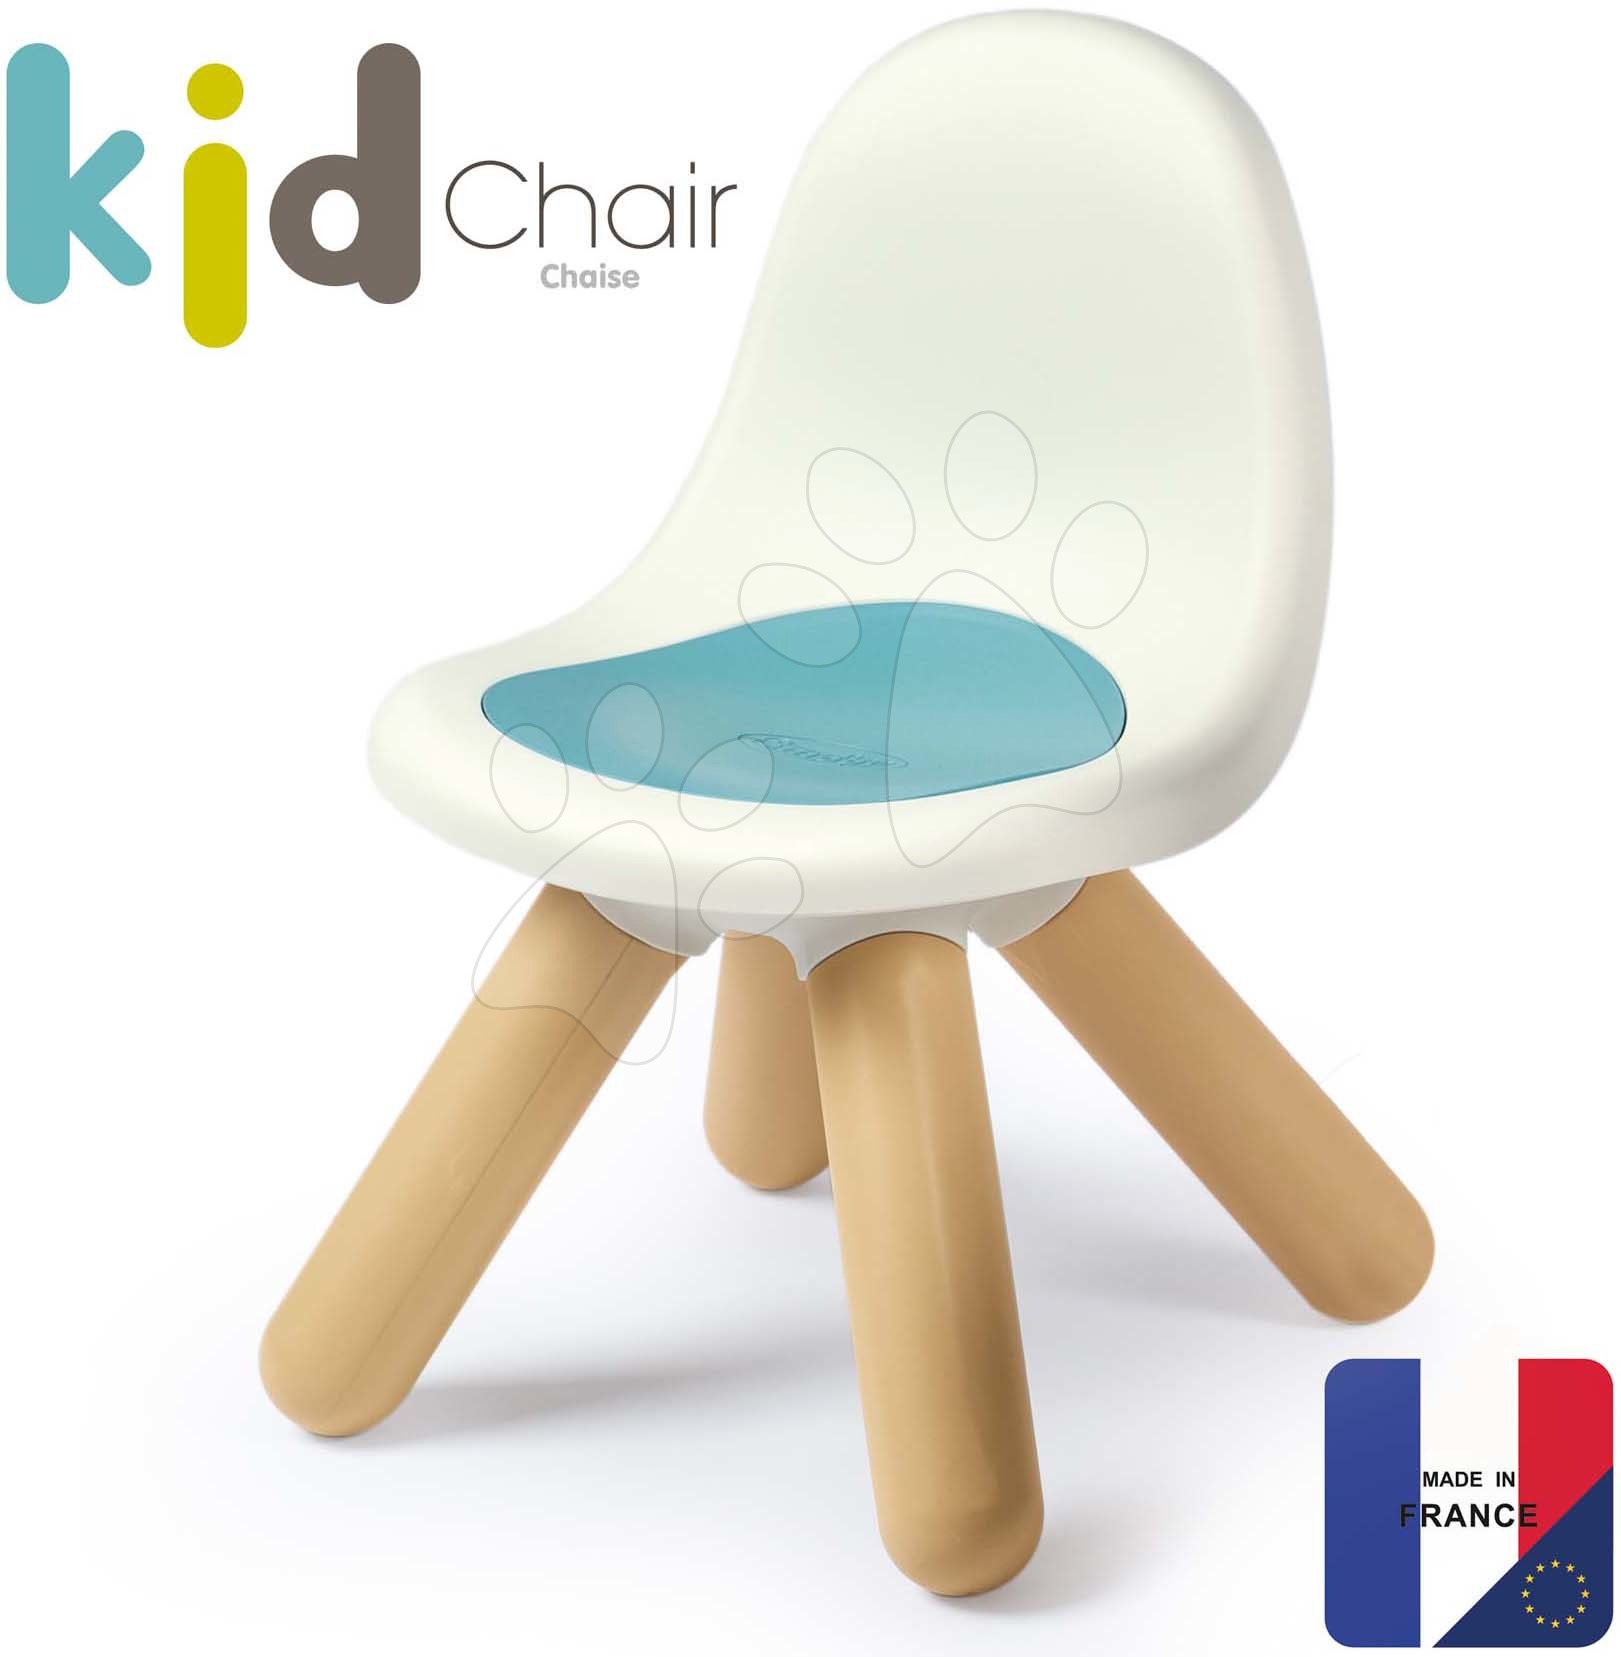 Dječji vrtni namještaj - Stolica za djecu Kid Furniture Chair Blue Smoby plava s UV filterom, nosivost 50 kg, visina sjedalice 27 cm od 18 mjes